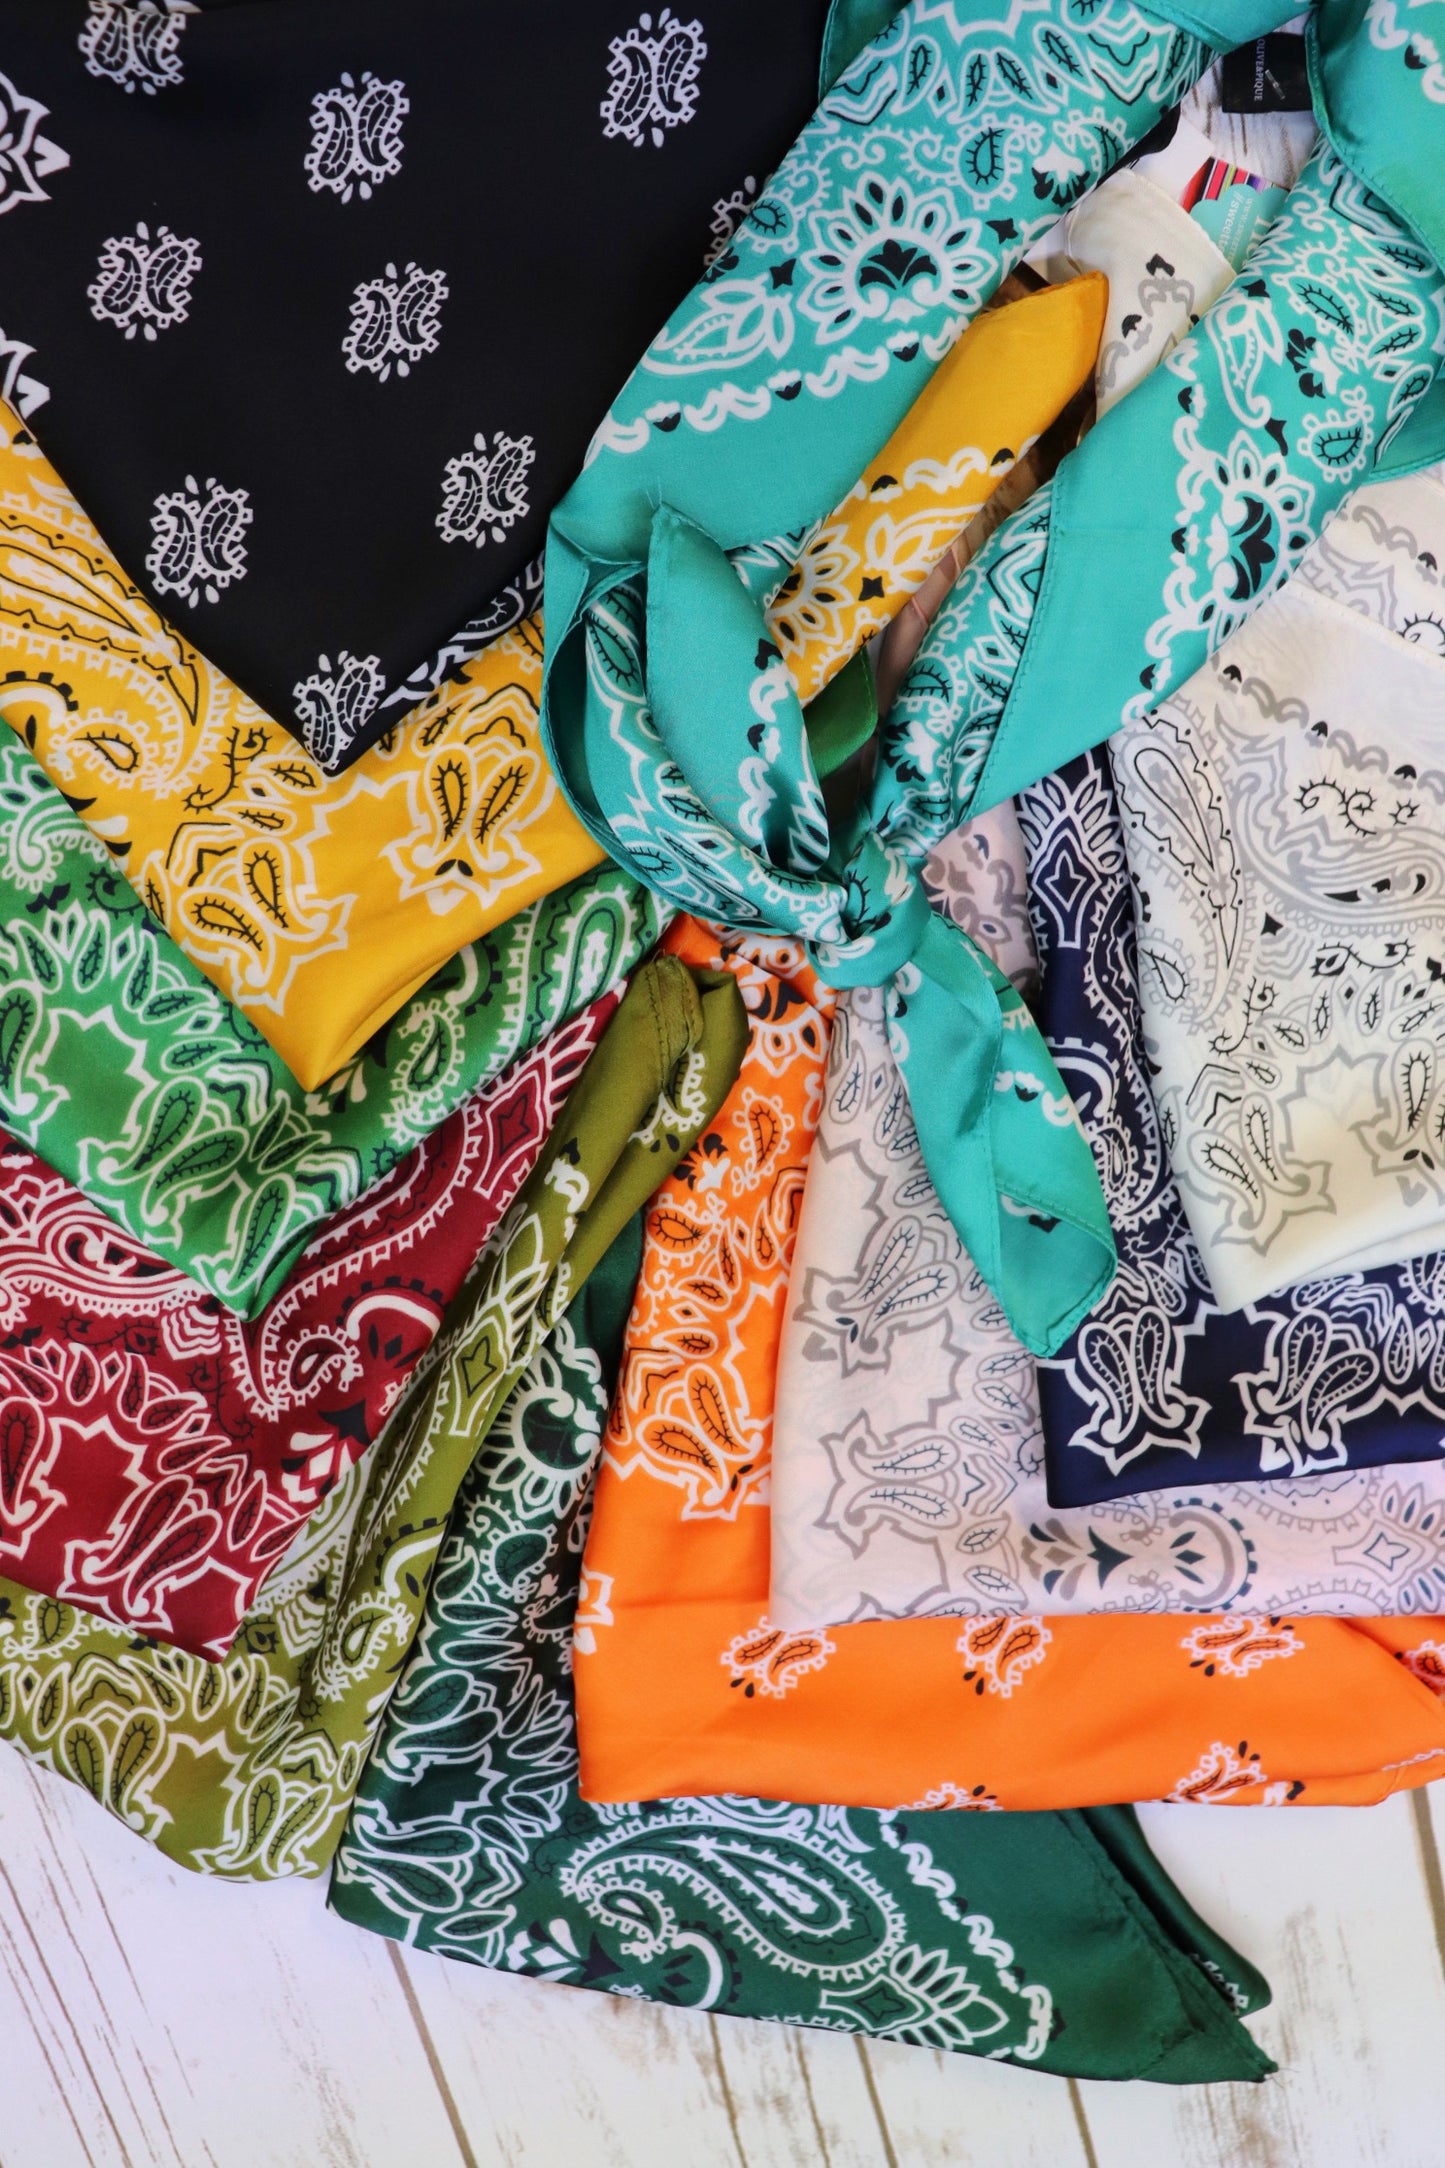 Vintage Paisley Silk Neckerchief [All Colors]